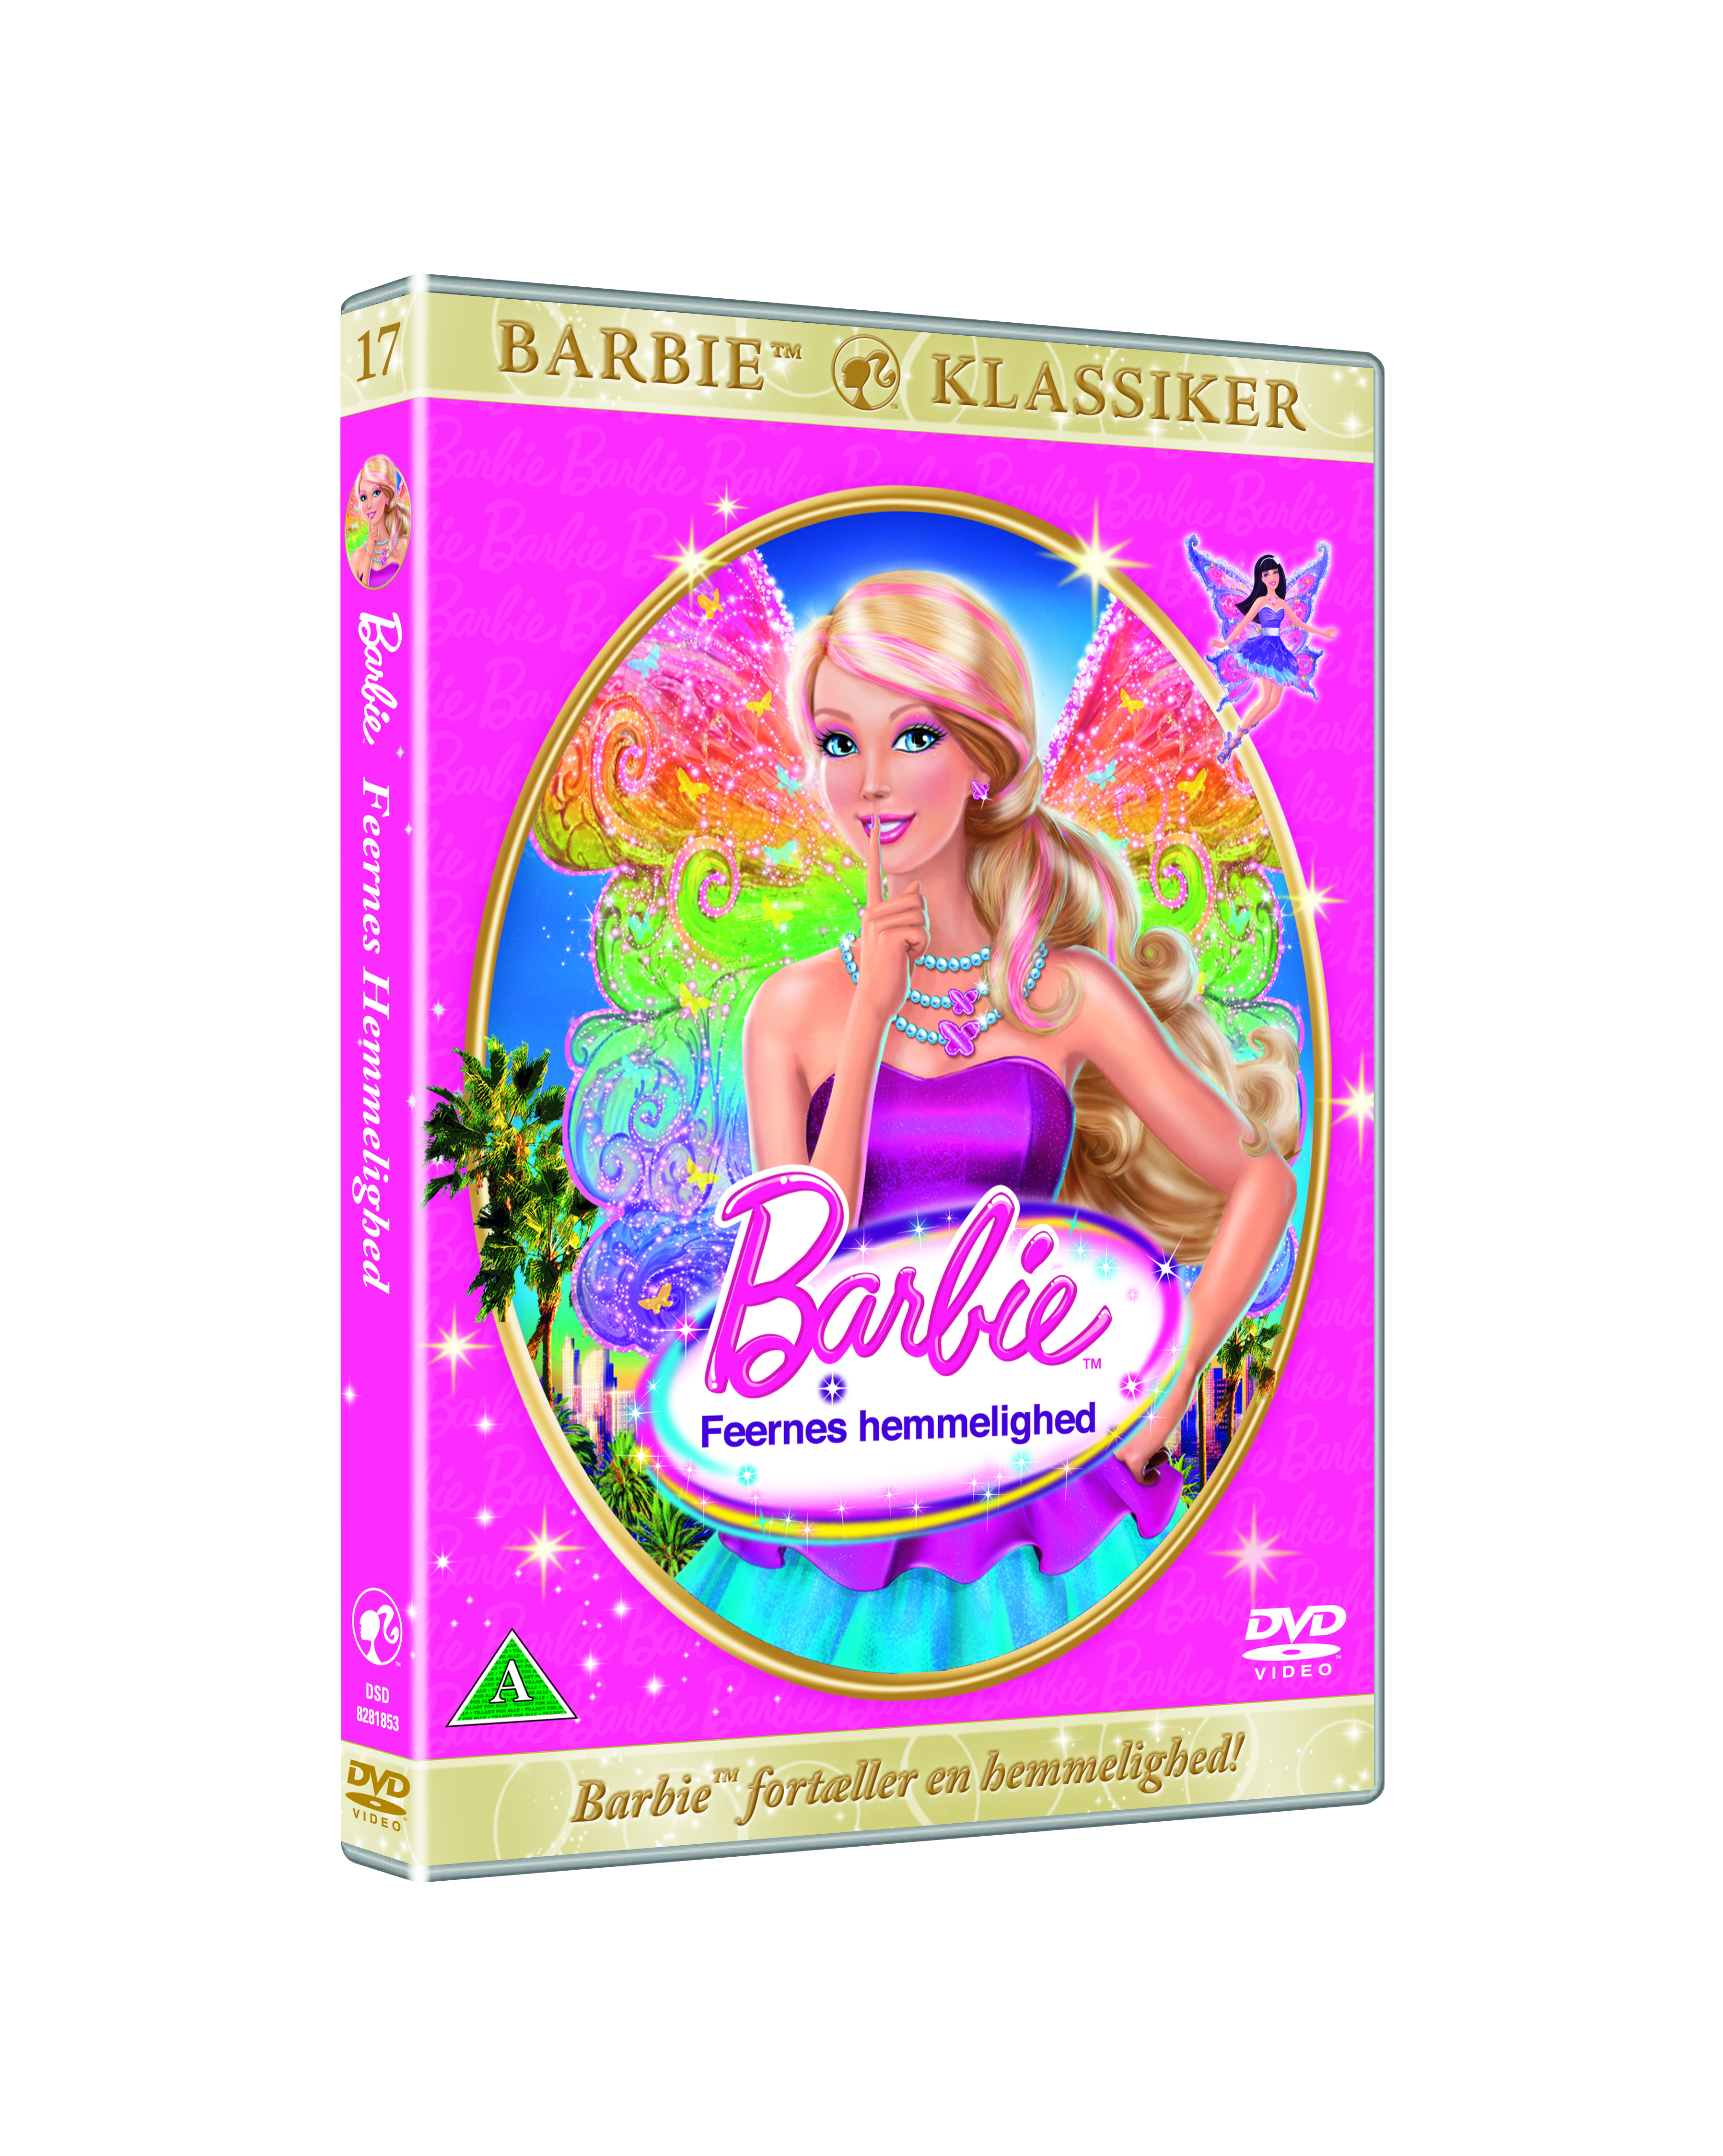 eksplicit velgørenhed porter Køb Barbie: Feernes Hemmelighed (NO. 17) - DVD